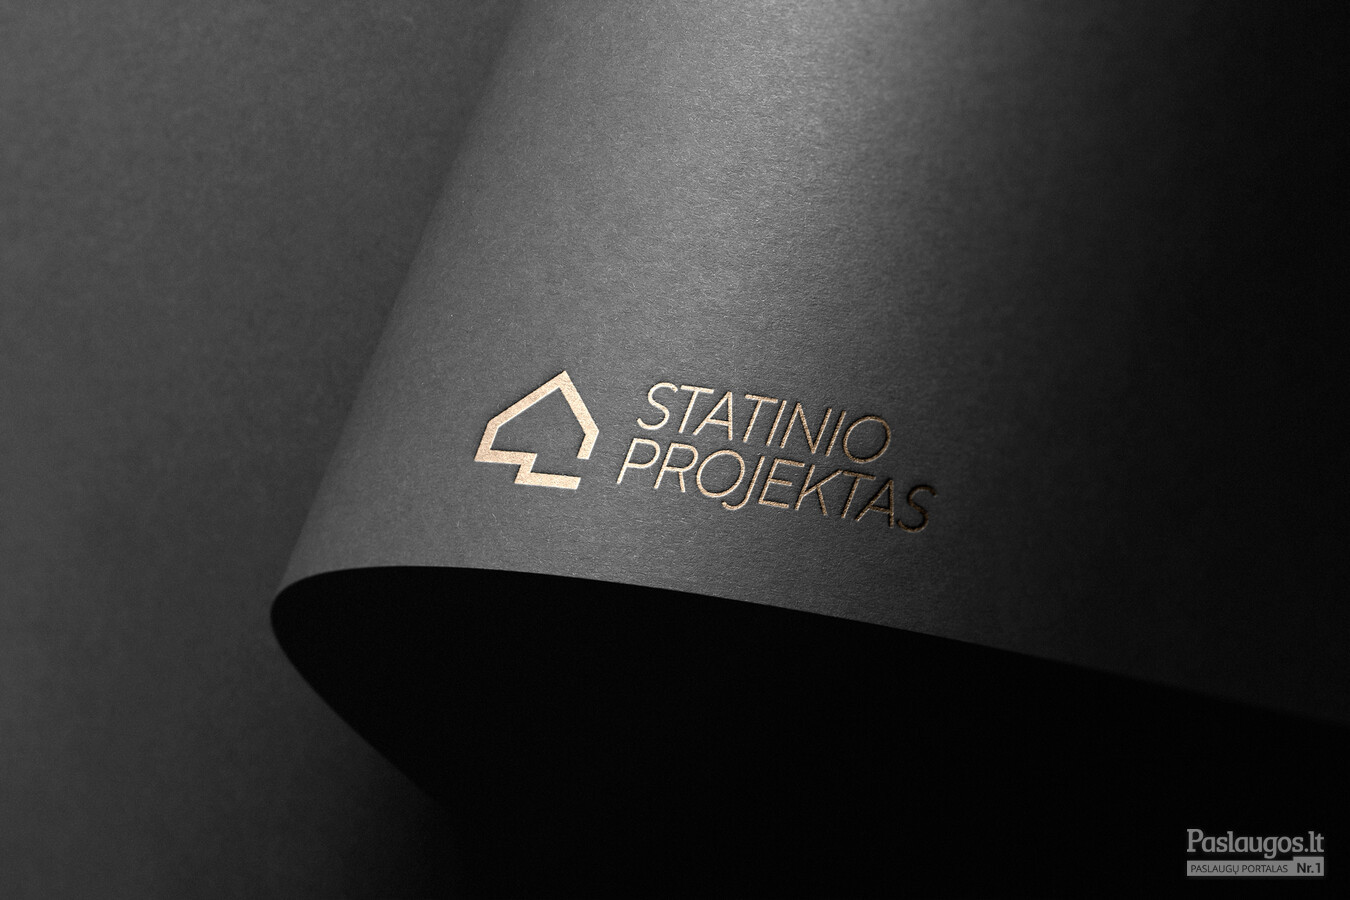 Statinio projektas  |   Logotipų kūrimas - www.glogo.eu - logo creation.